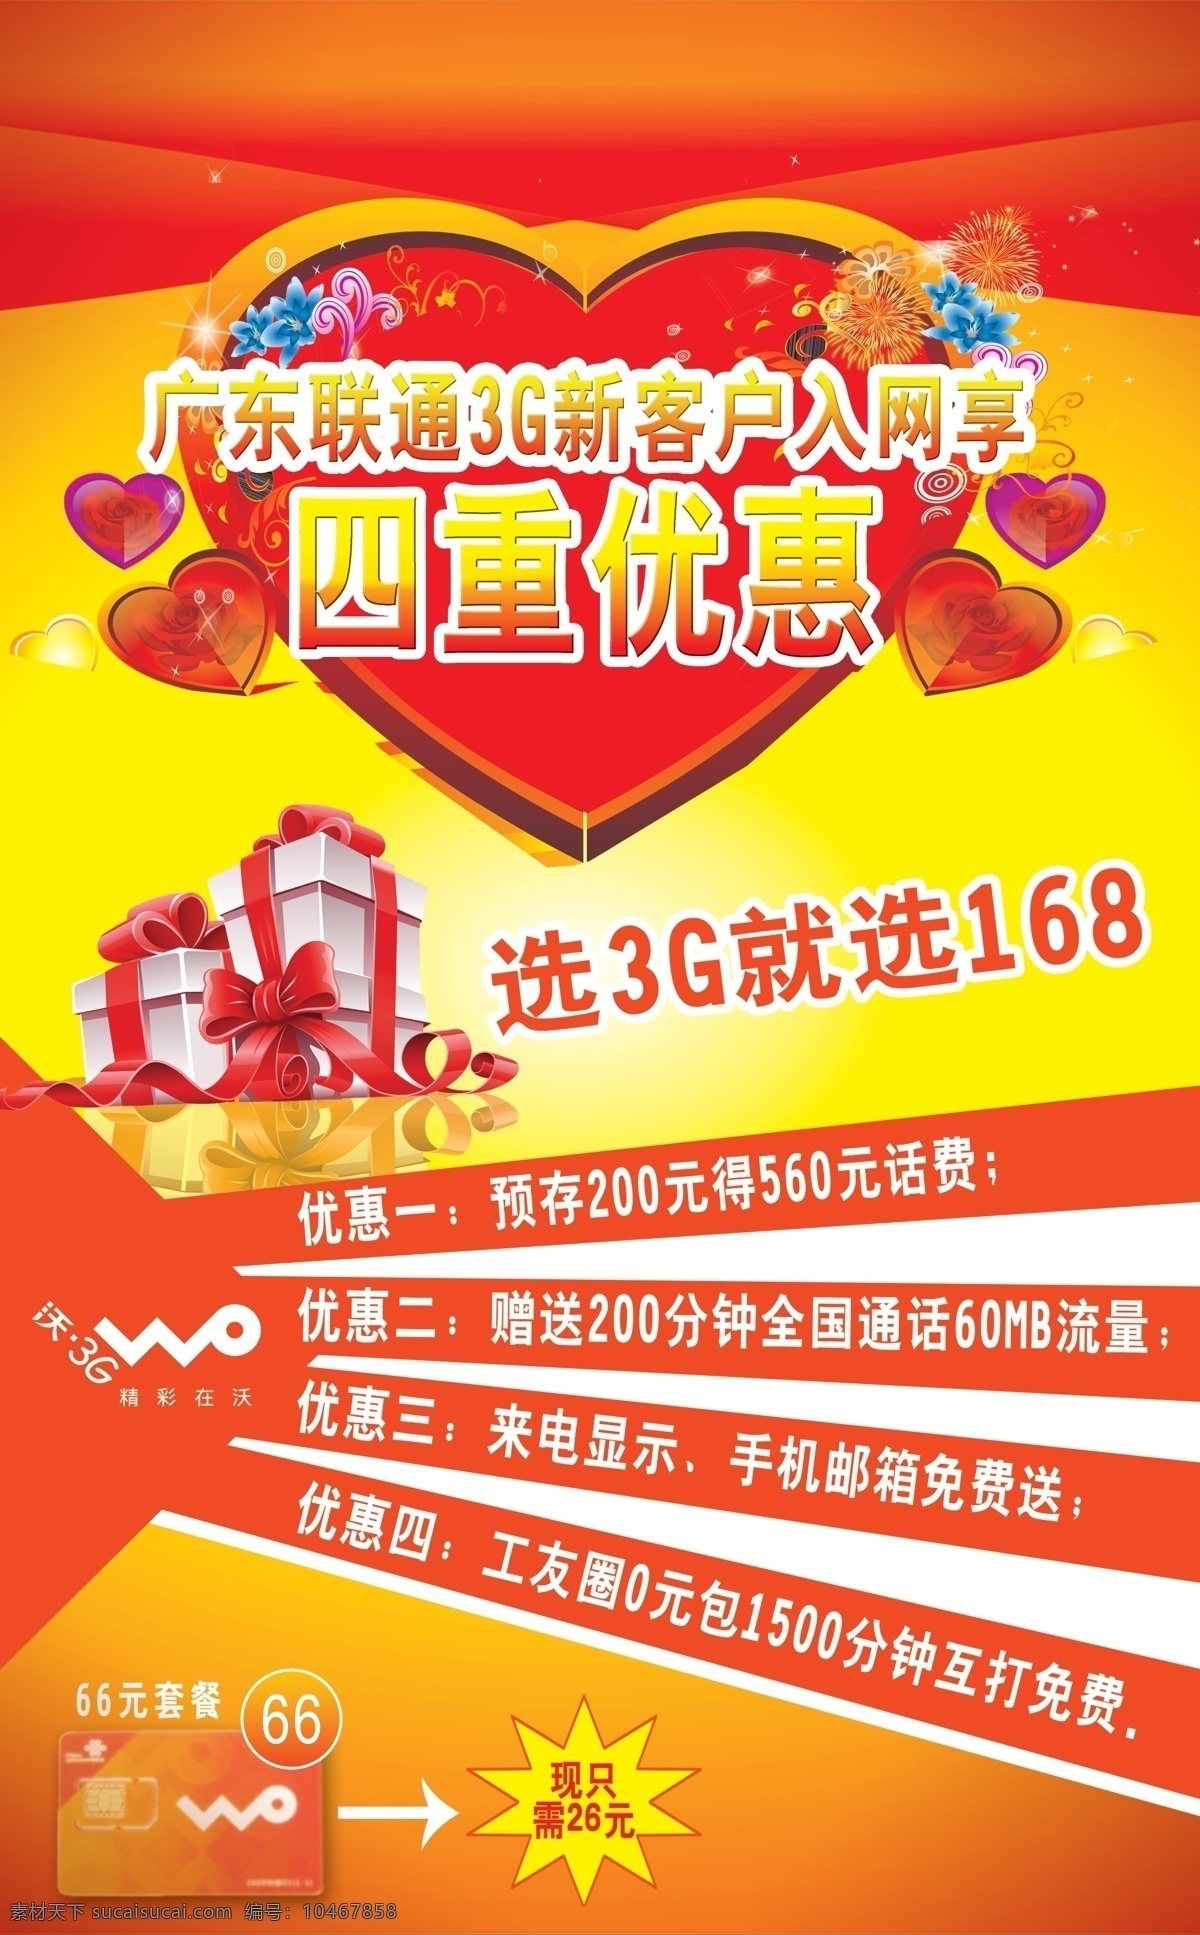 中国联通 促销 海报 广告设计模板 联通海报 源文件 3g 模板